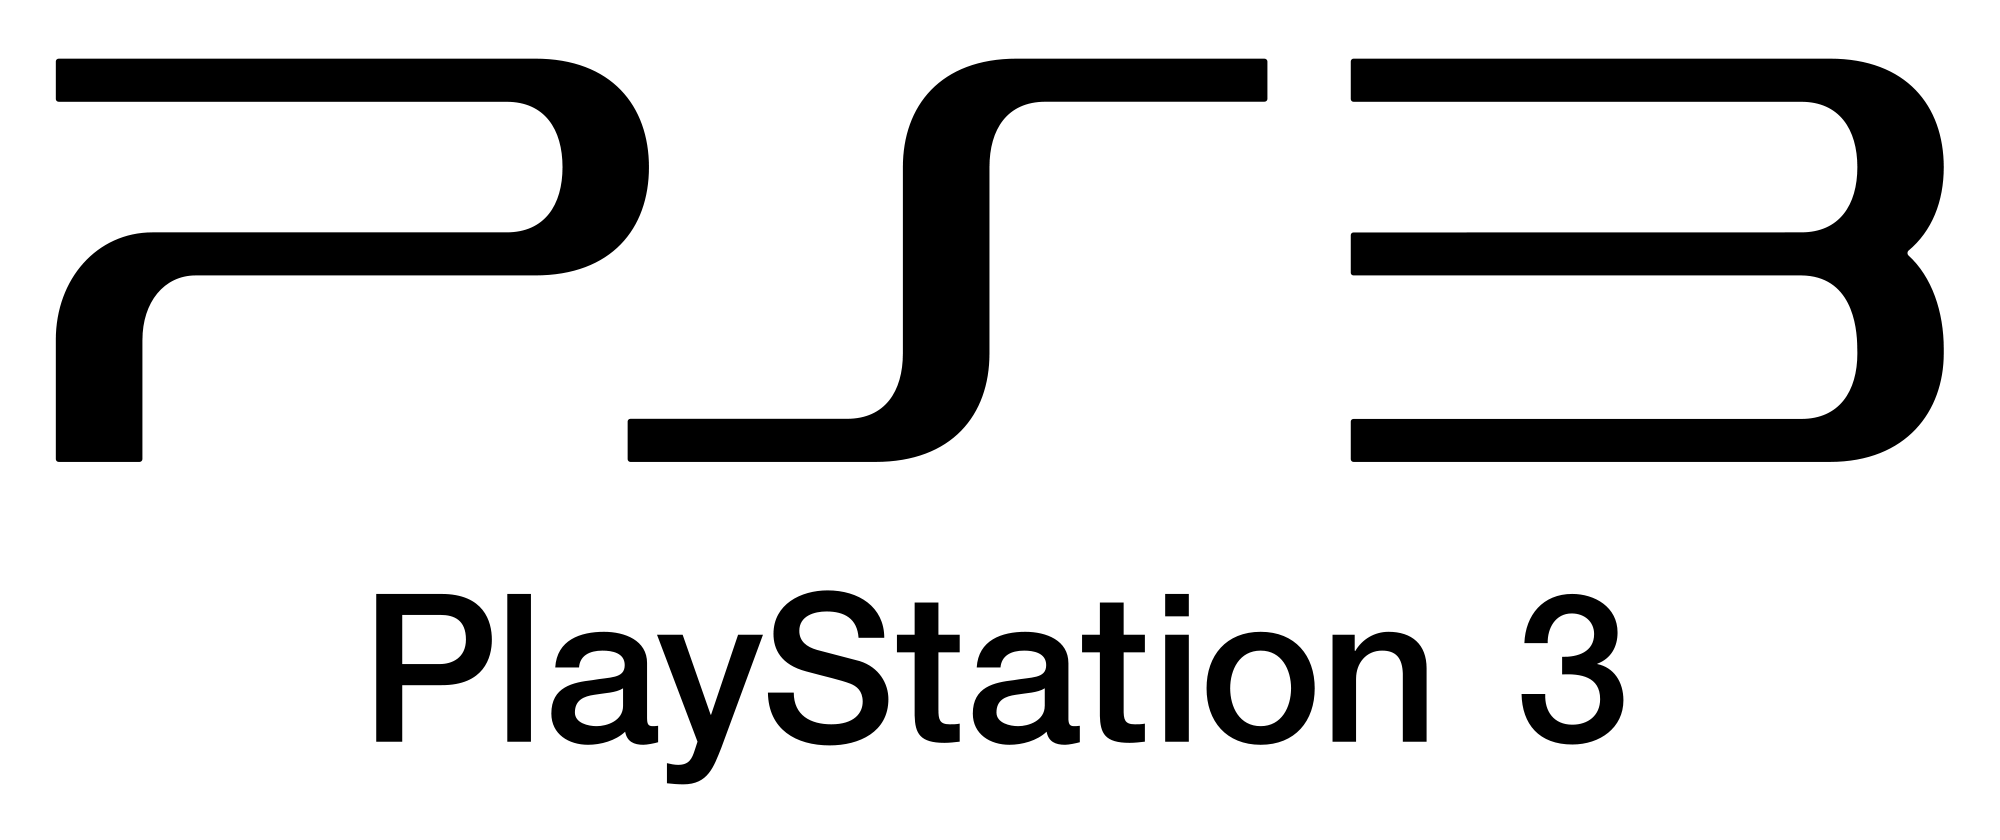 RPCS3: ecco le ultime novità dell’ottimo emulatore per PlayStation 3